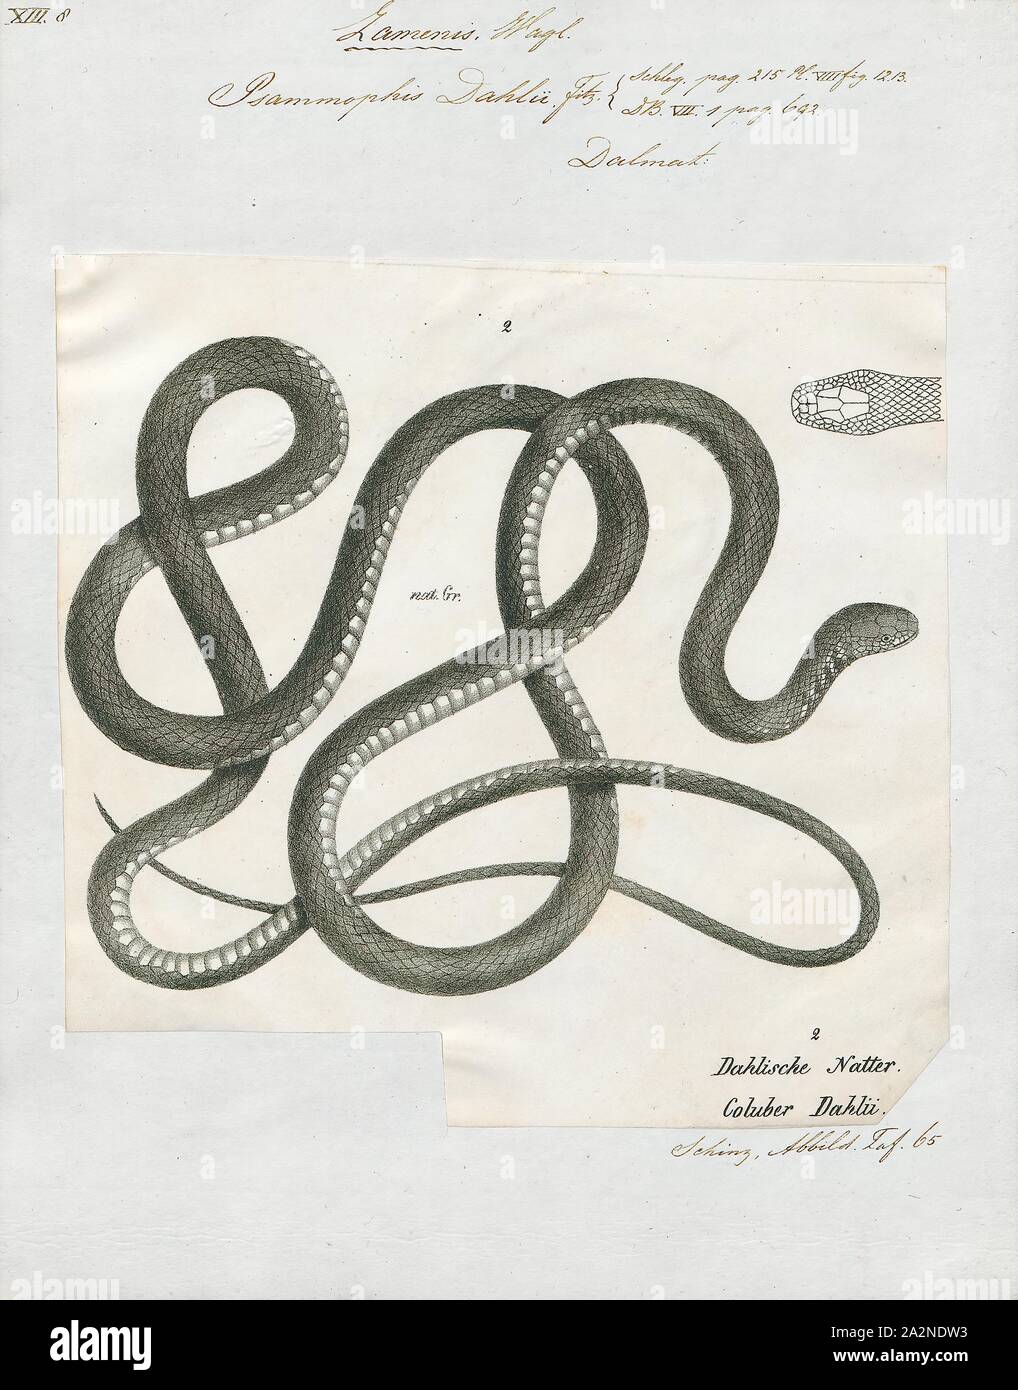 Psammophis Psammophis dahlii, Print, est une espèce de serpents de la famille des Lamprophiidae. Le genre comprend 34 espèces, qui sont trouvés en Afrique et en Asie. Psammophis sont diurnes et se nourrissent de lézards et de rongeurs dont ils chassent activement. Toutes les espèces du genre sont venimeux, et le venin est considéré comme doux et inoffensif pour l'homme, 1700-1880. Banque D'Images